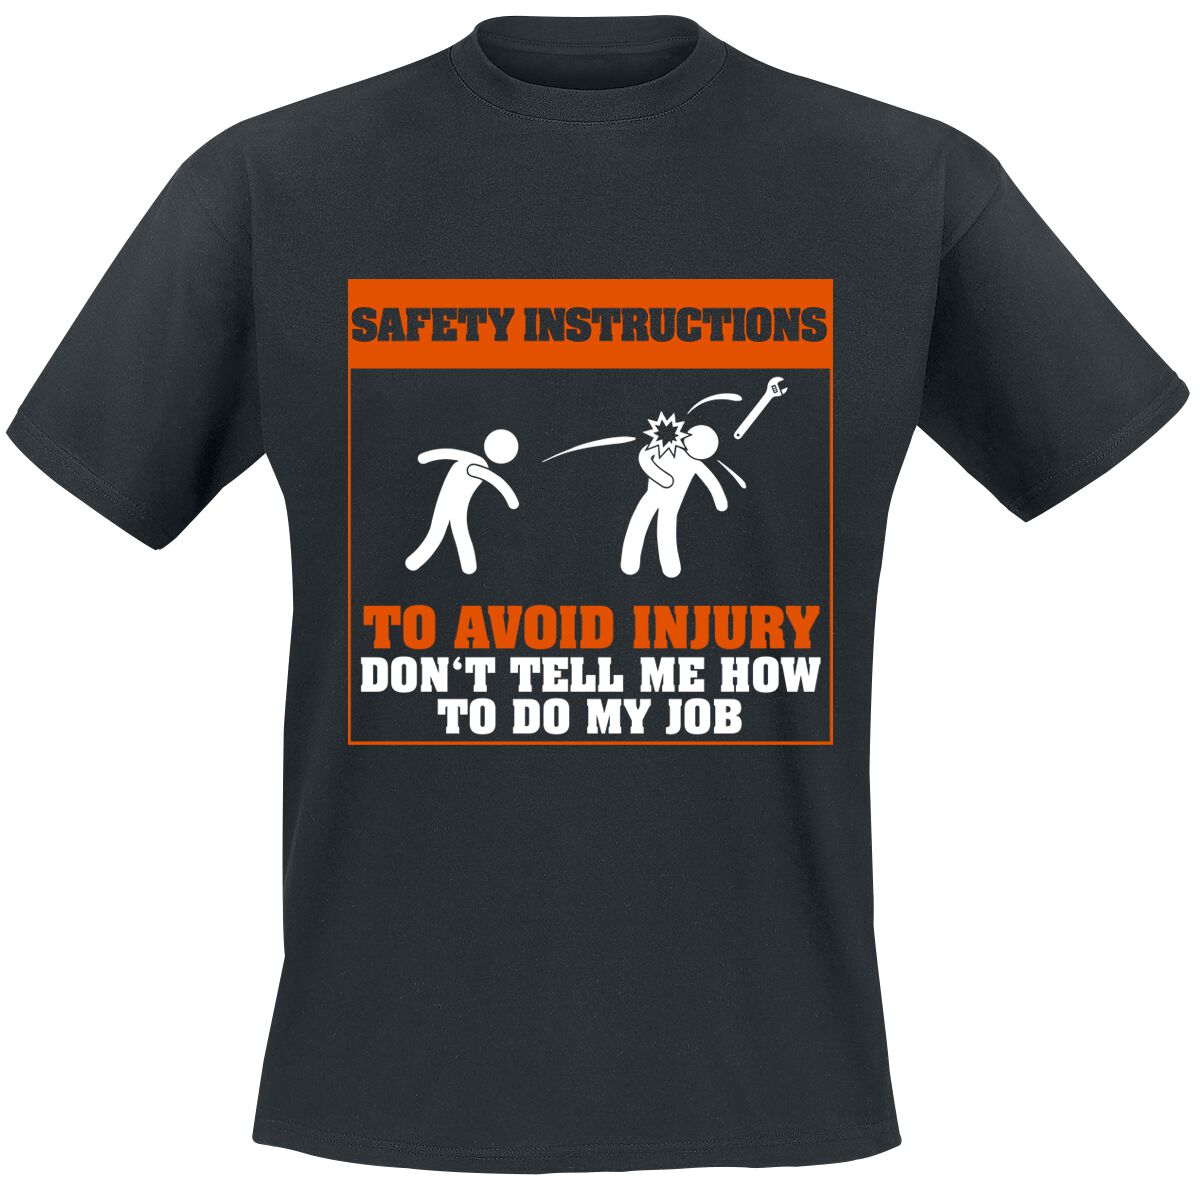 Beruf & Karriere T-Shirt - Safety Instructions - S bis 5XL - für Männer - Größe M - schwarz